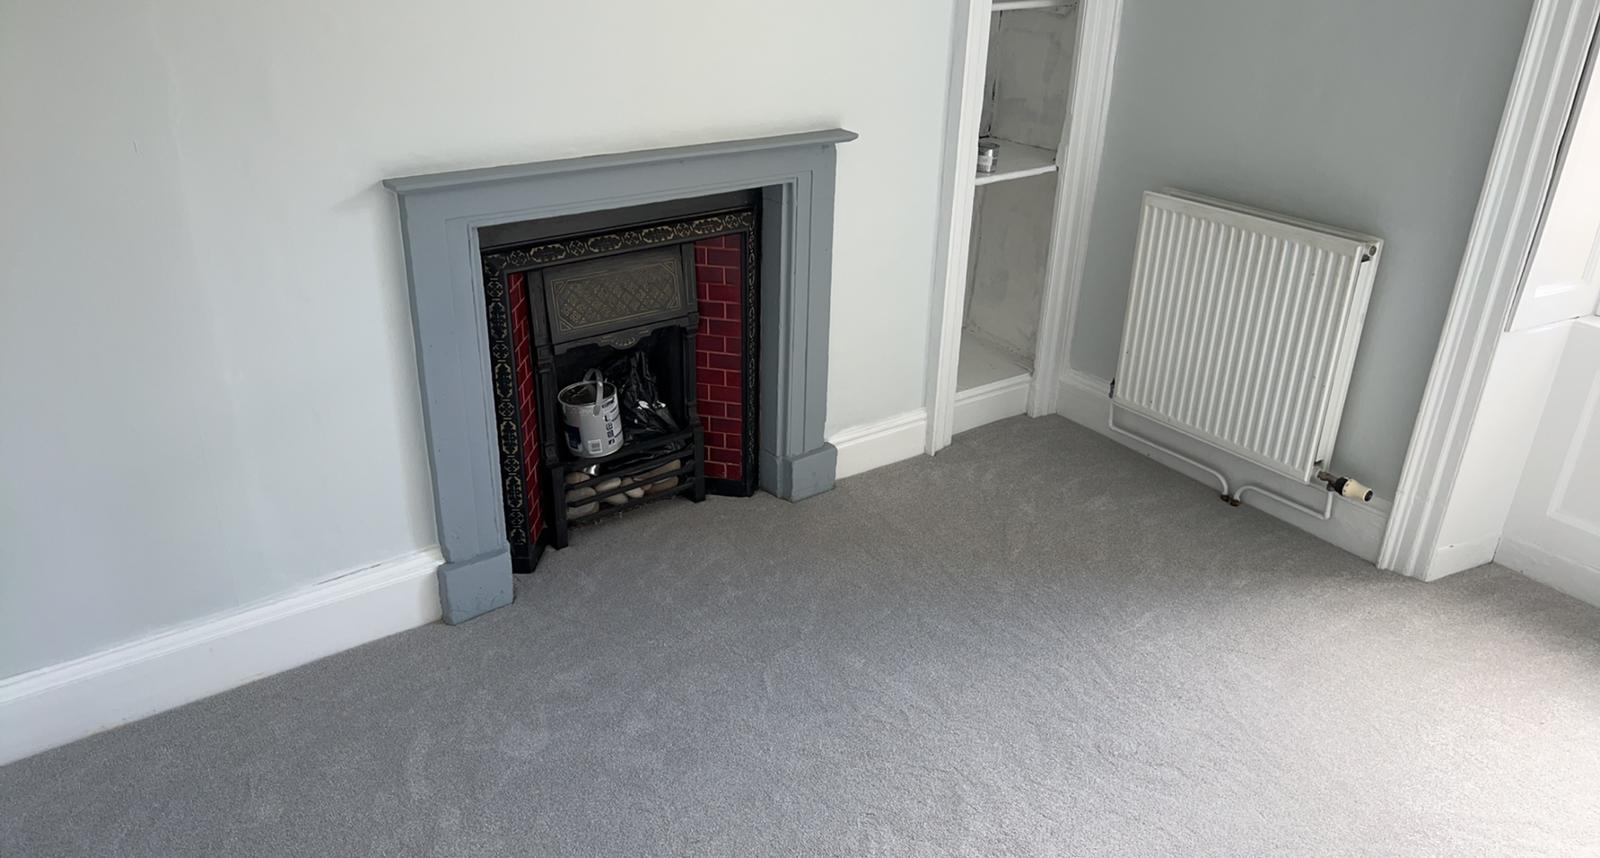 Avonvale Carpets - Lansdown - Bath - Apartment - Carpet - Rental - Furlong - Polyprop - Polypropylene - 3